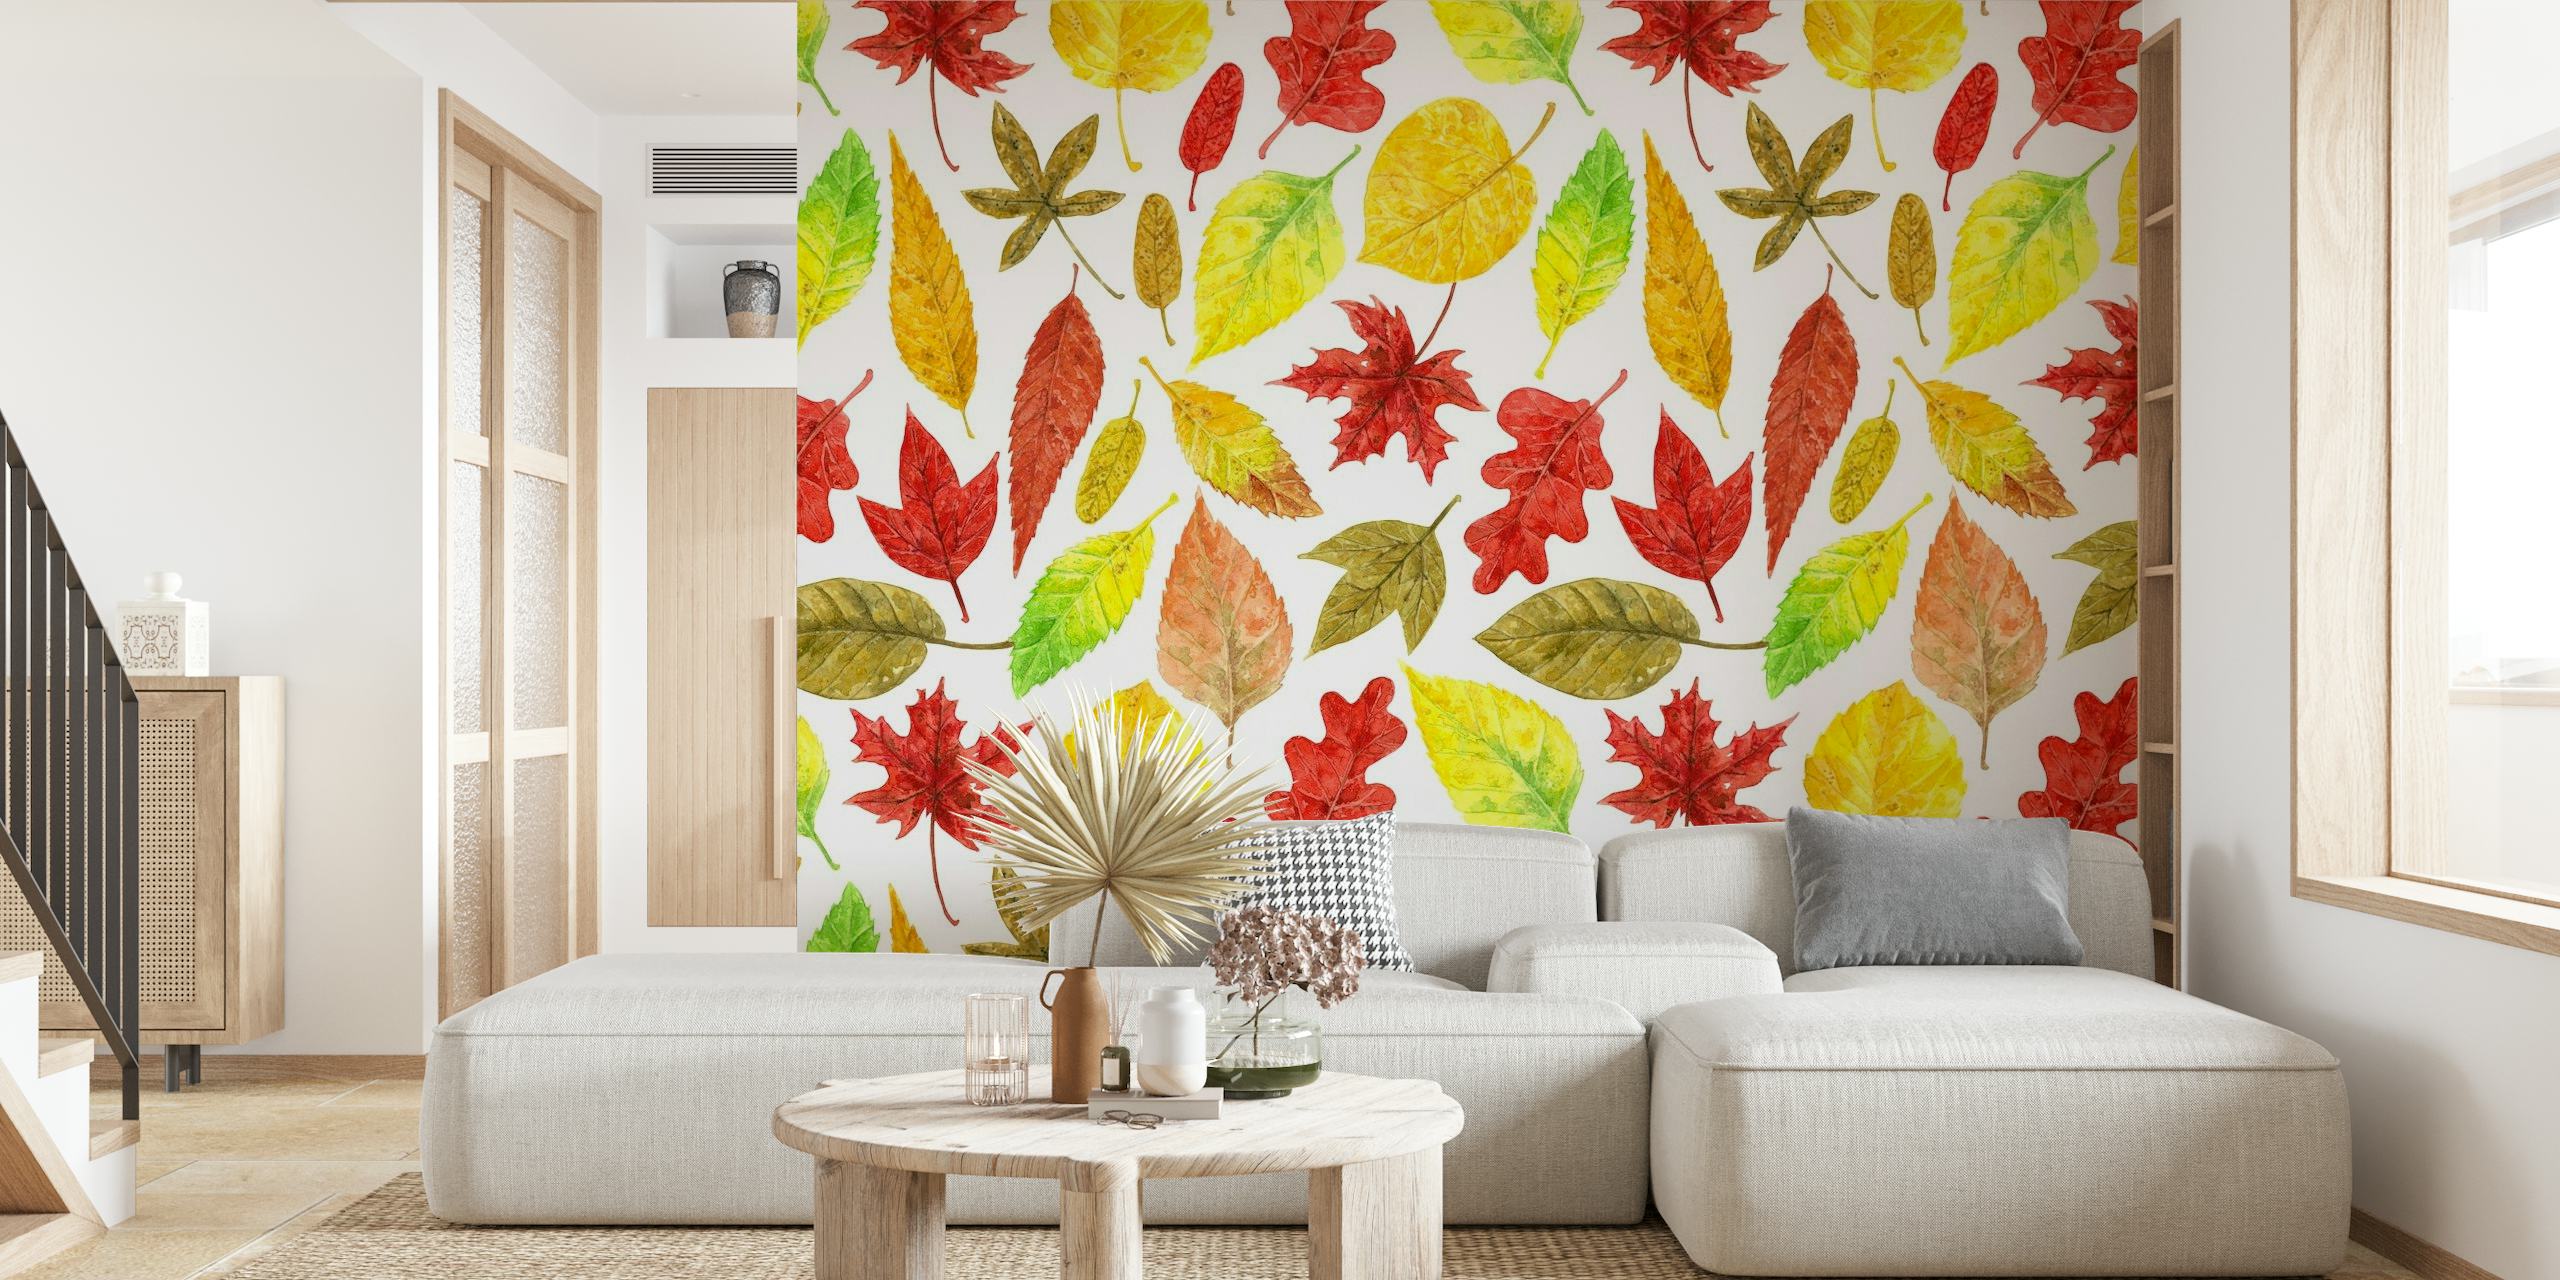 Akvarel efterårsblade i røde, orange og gule nuancer på et hvidt vægmaleri